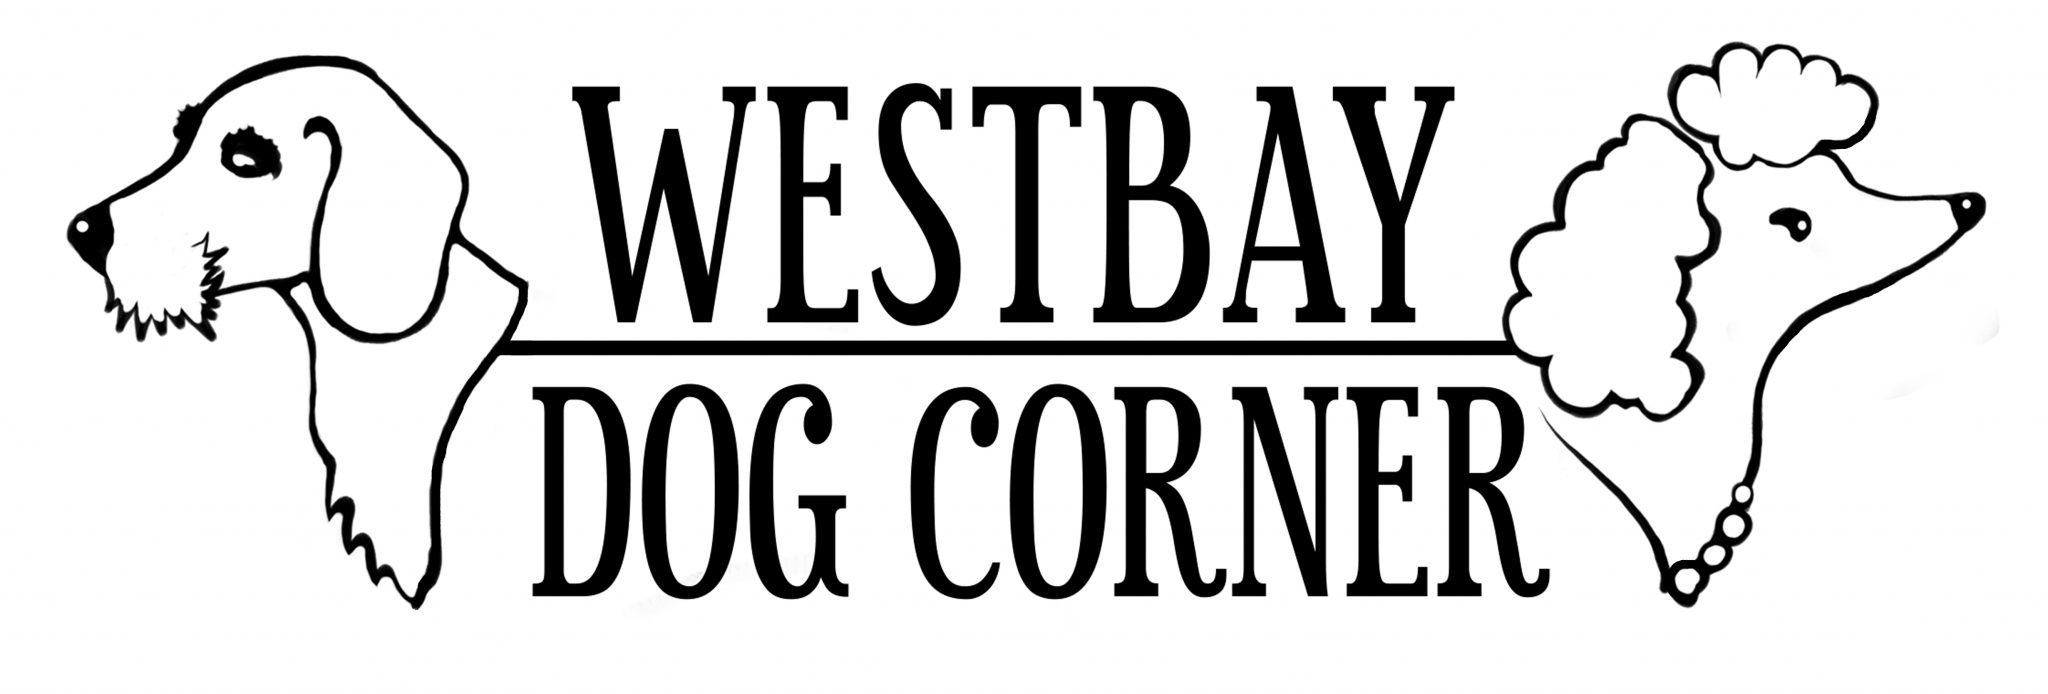 Westbay Dog Corner